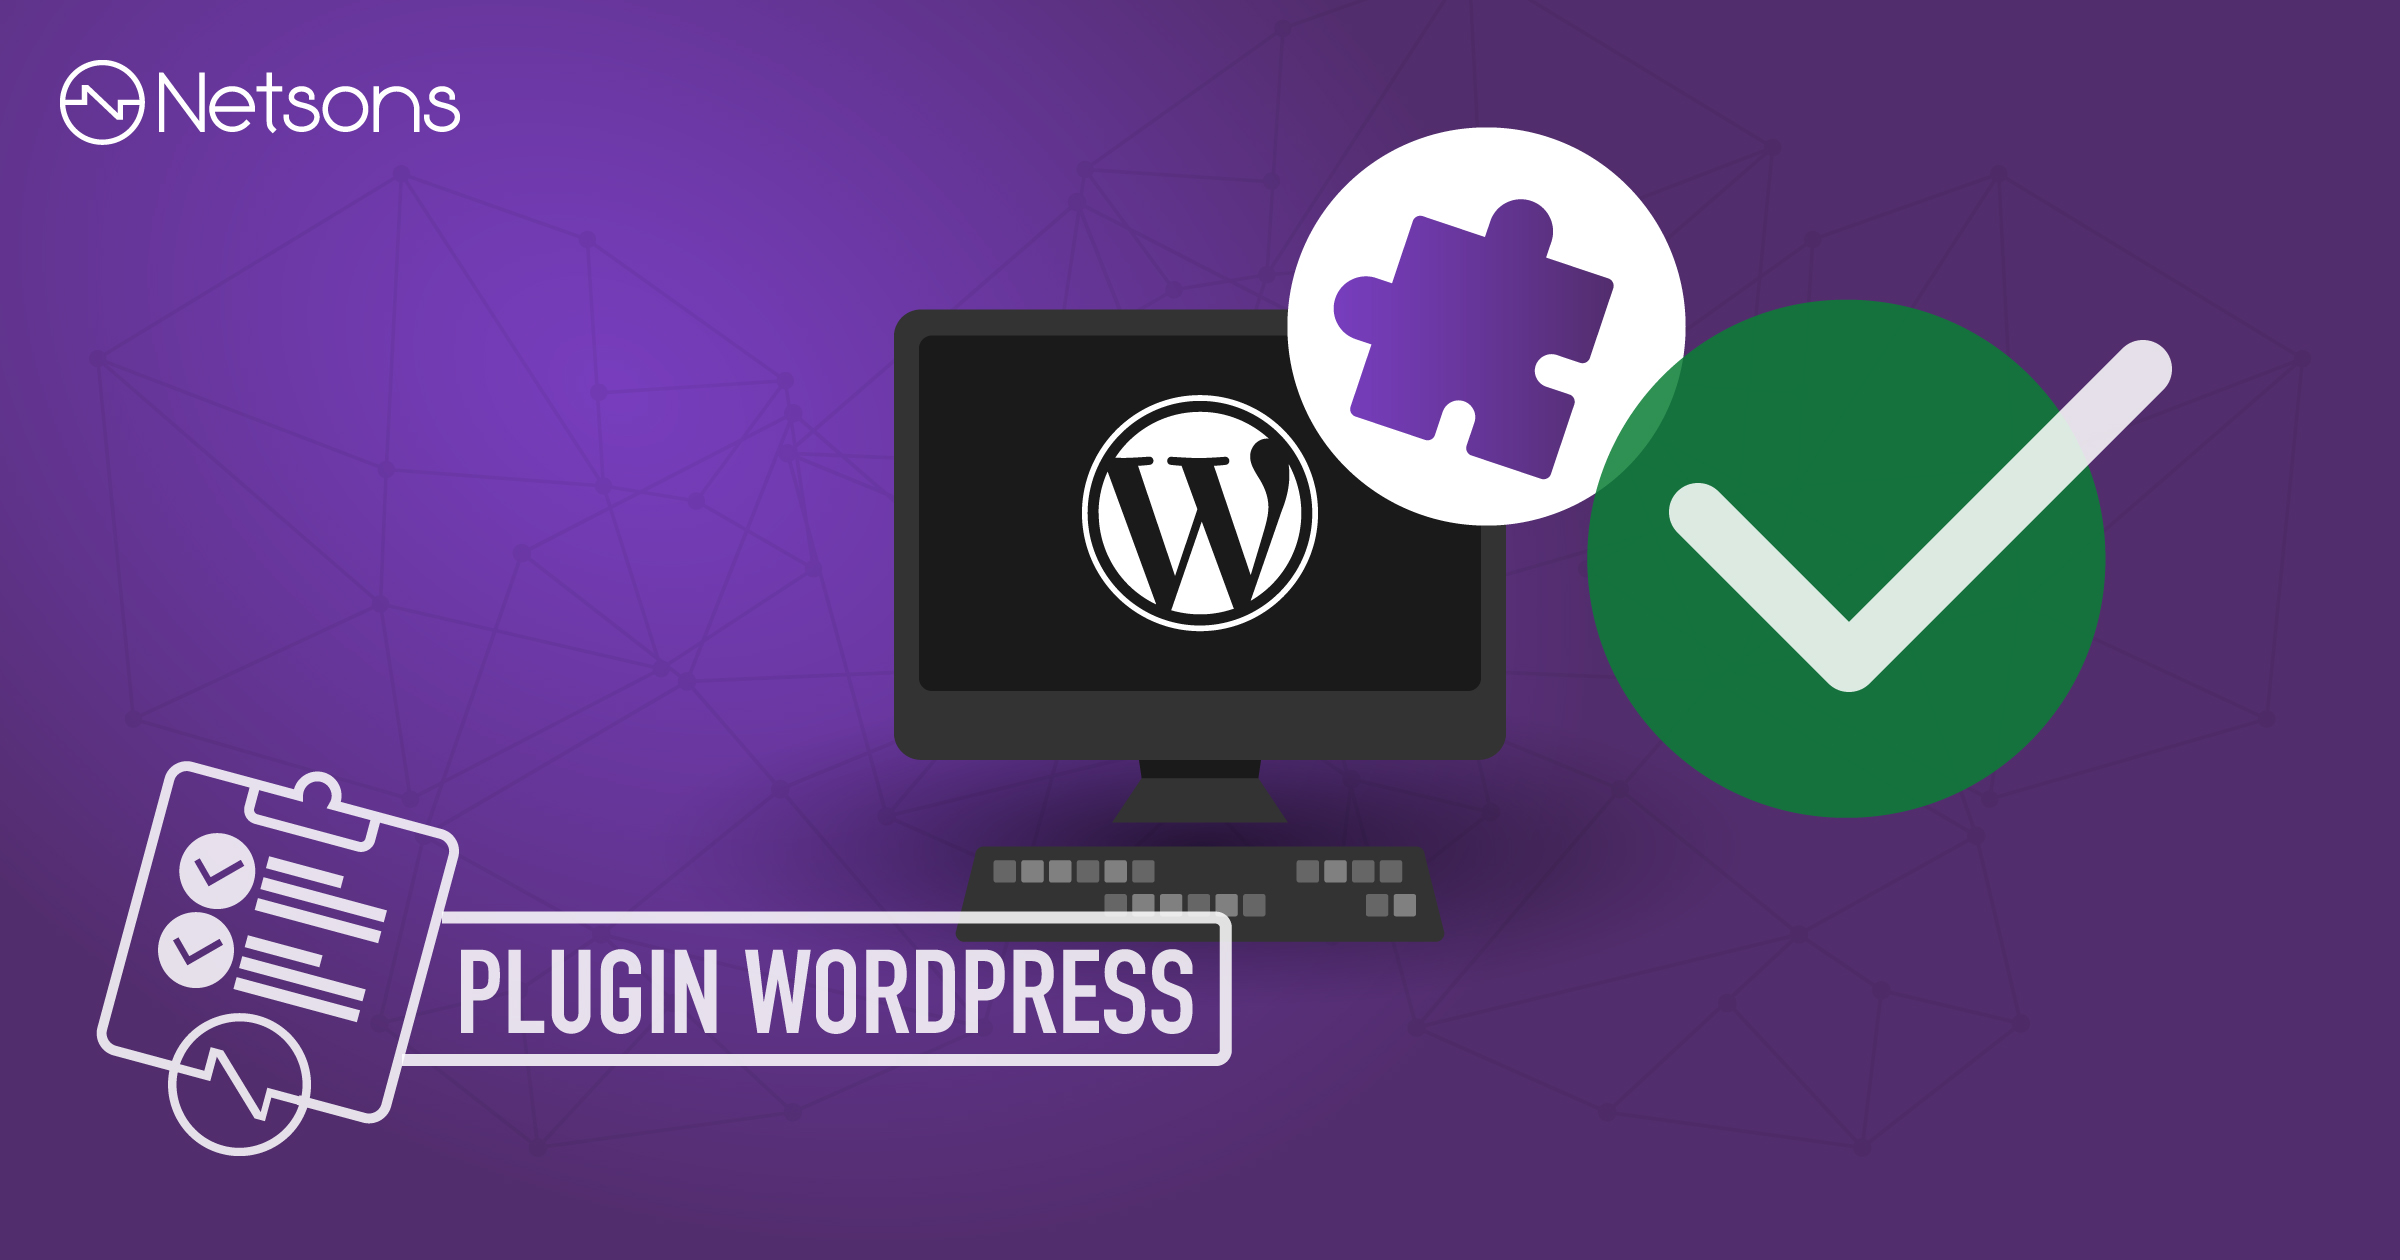 Come individuare e risolvere problemi nei plugin di WordPress